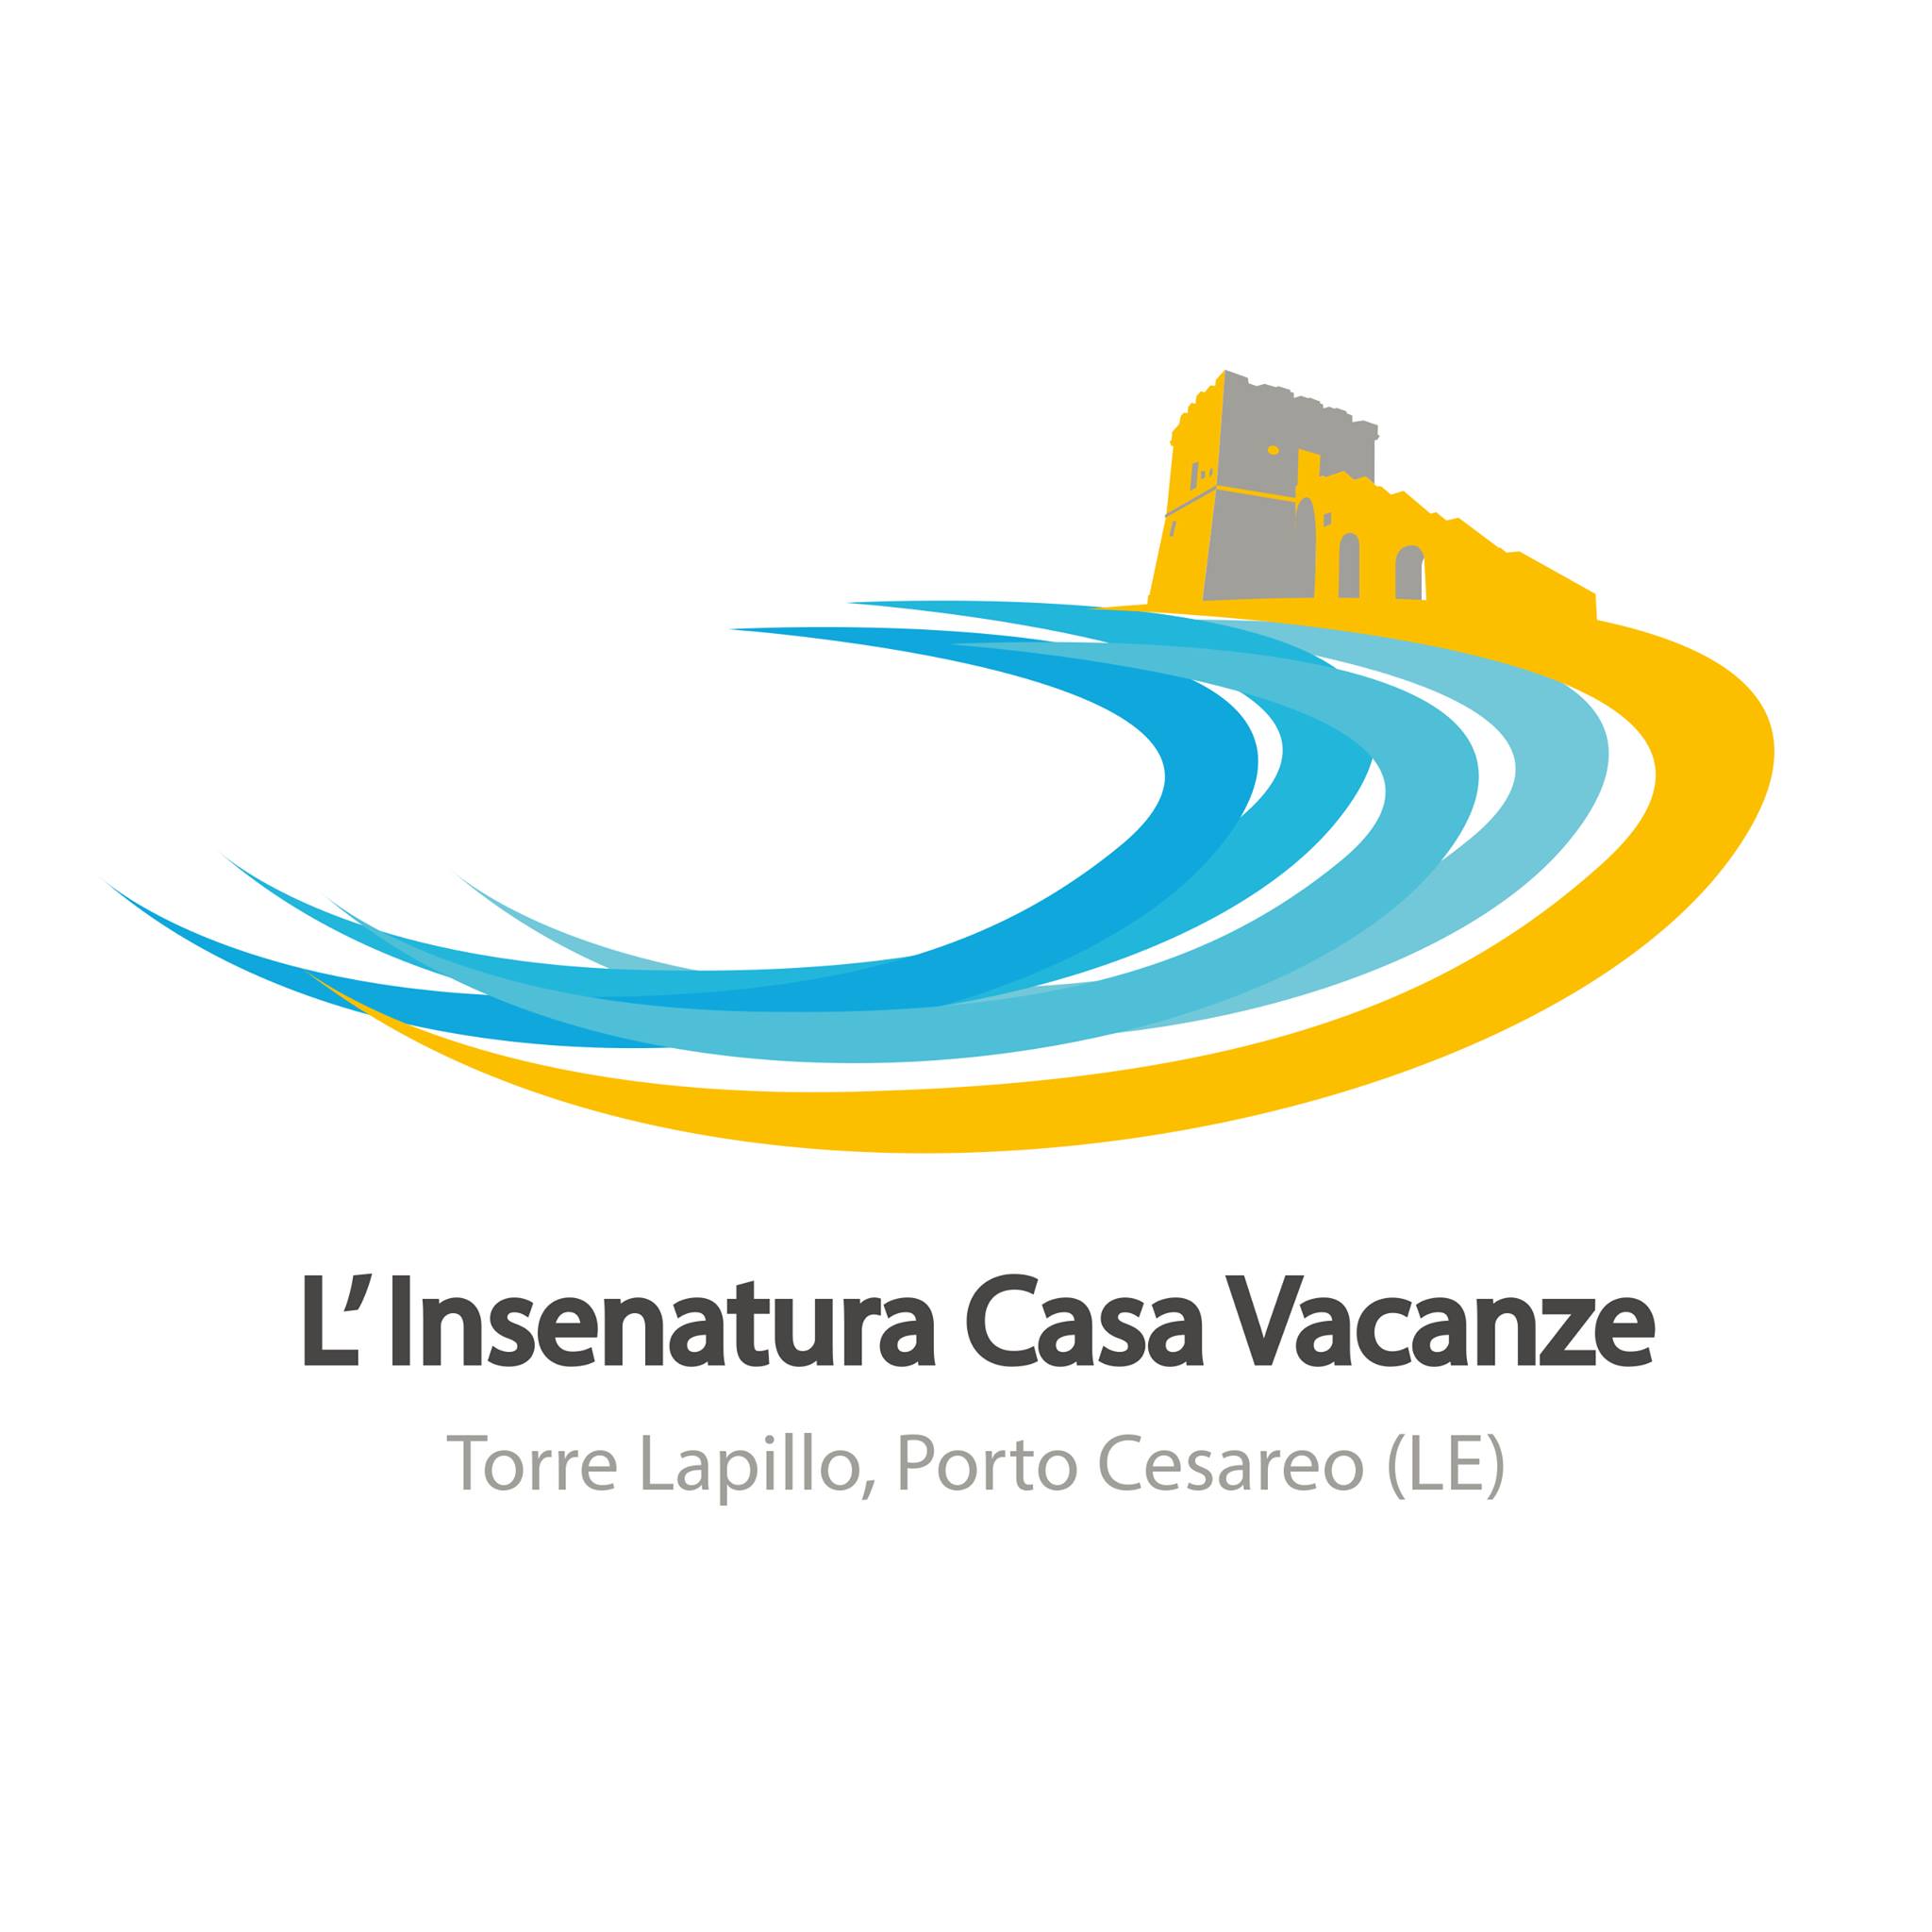 Affitti Porto Cesareo Casa Vacanza L Insenatura: si affittano appartamenti turistici situati a Torre Lapillo, la marina più importante di Porto Cesareo.